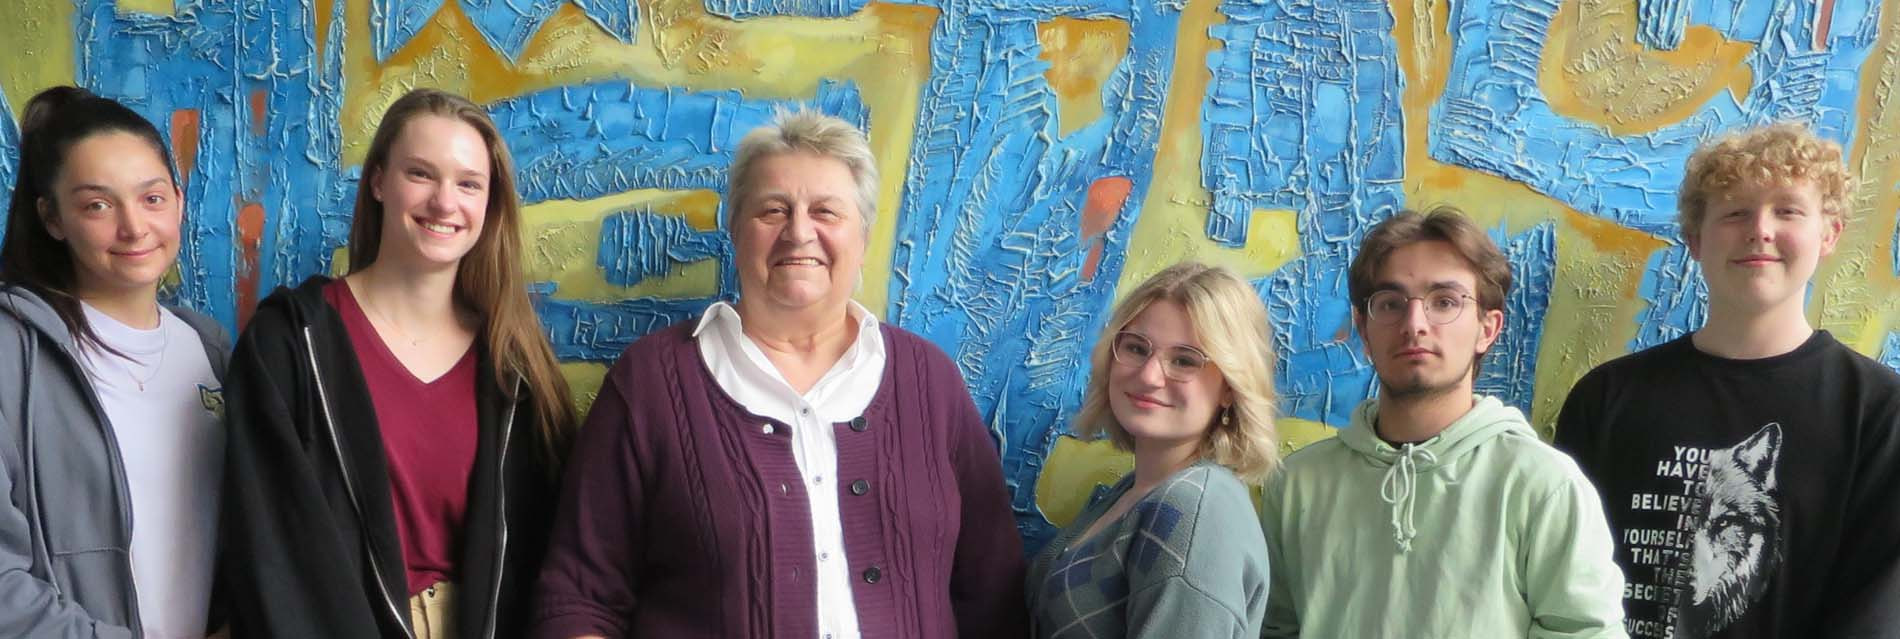 Die Schüler-Vertretung und Jugendpflegerin Dagmar Reuter planen die U18-Wahl in Werne. Foto: Privat